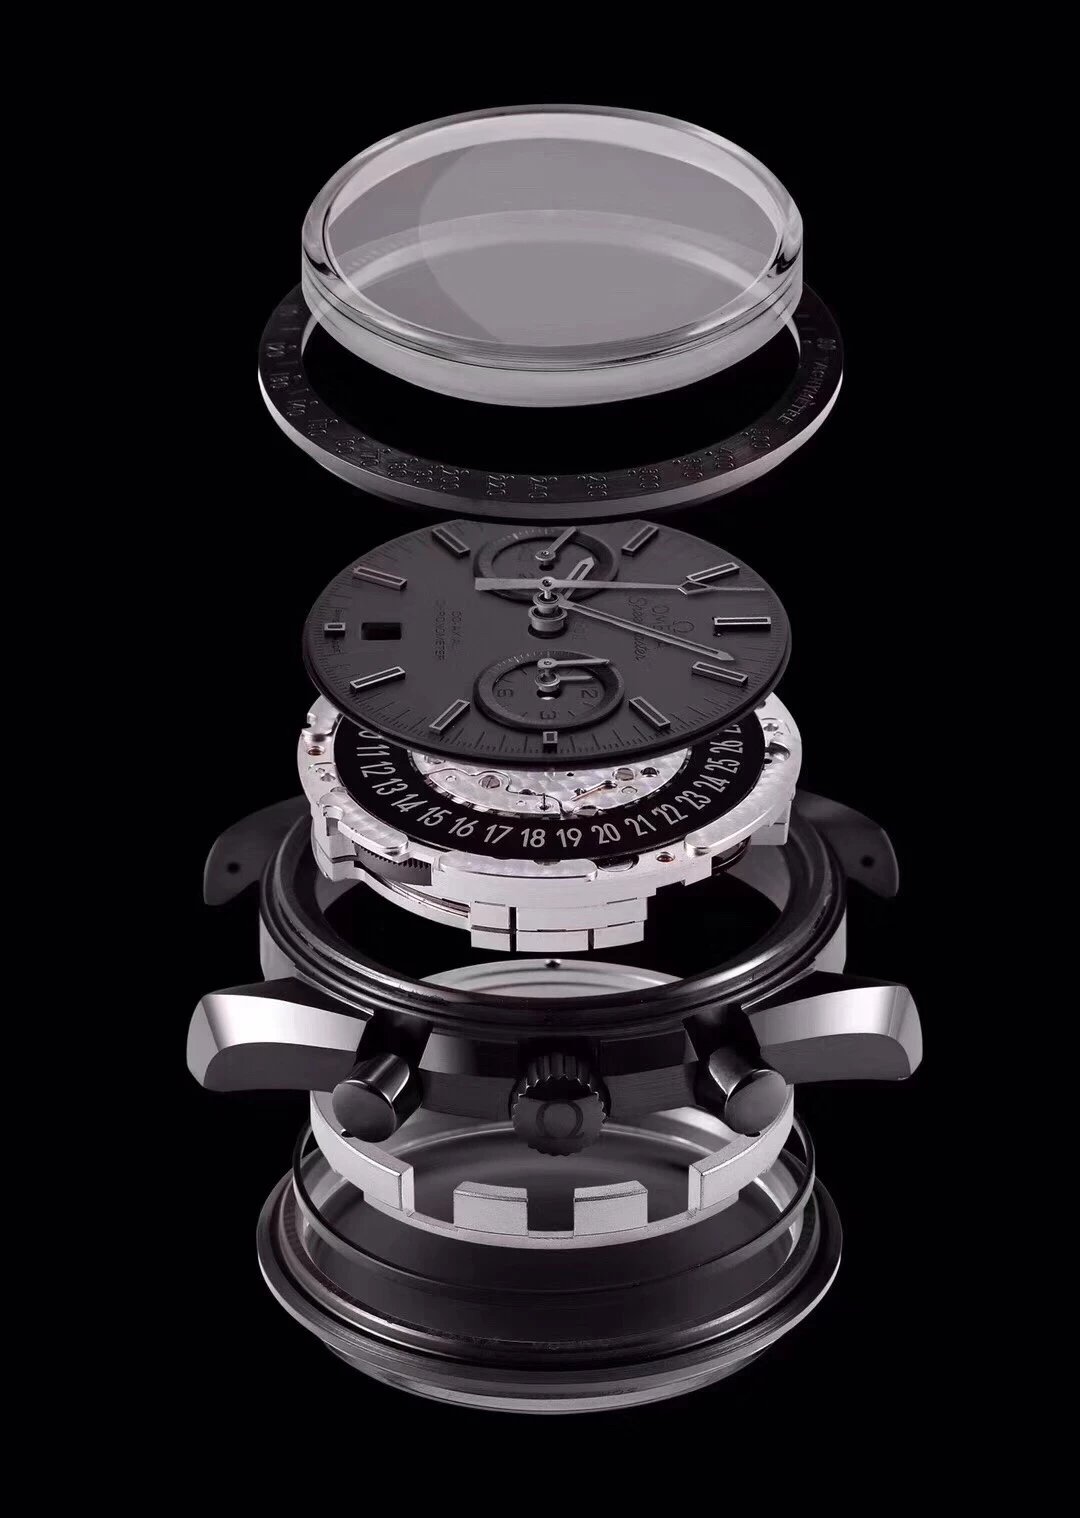 OMFactory最新力作V2升级版omega月之暗面系列男士皮带手表完美出击超霸系列最高版本陶瓷表壳原装一致蓝宝石玻璃原装开模om超霸机械男表